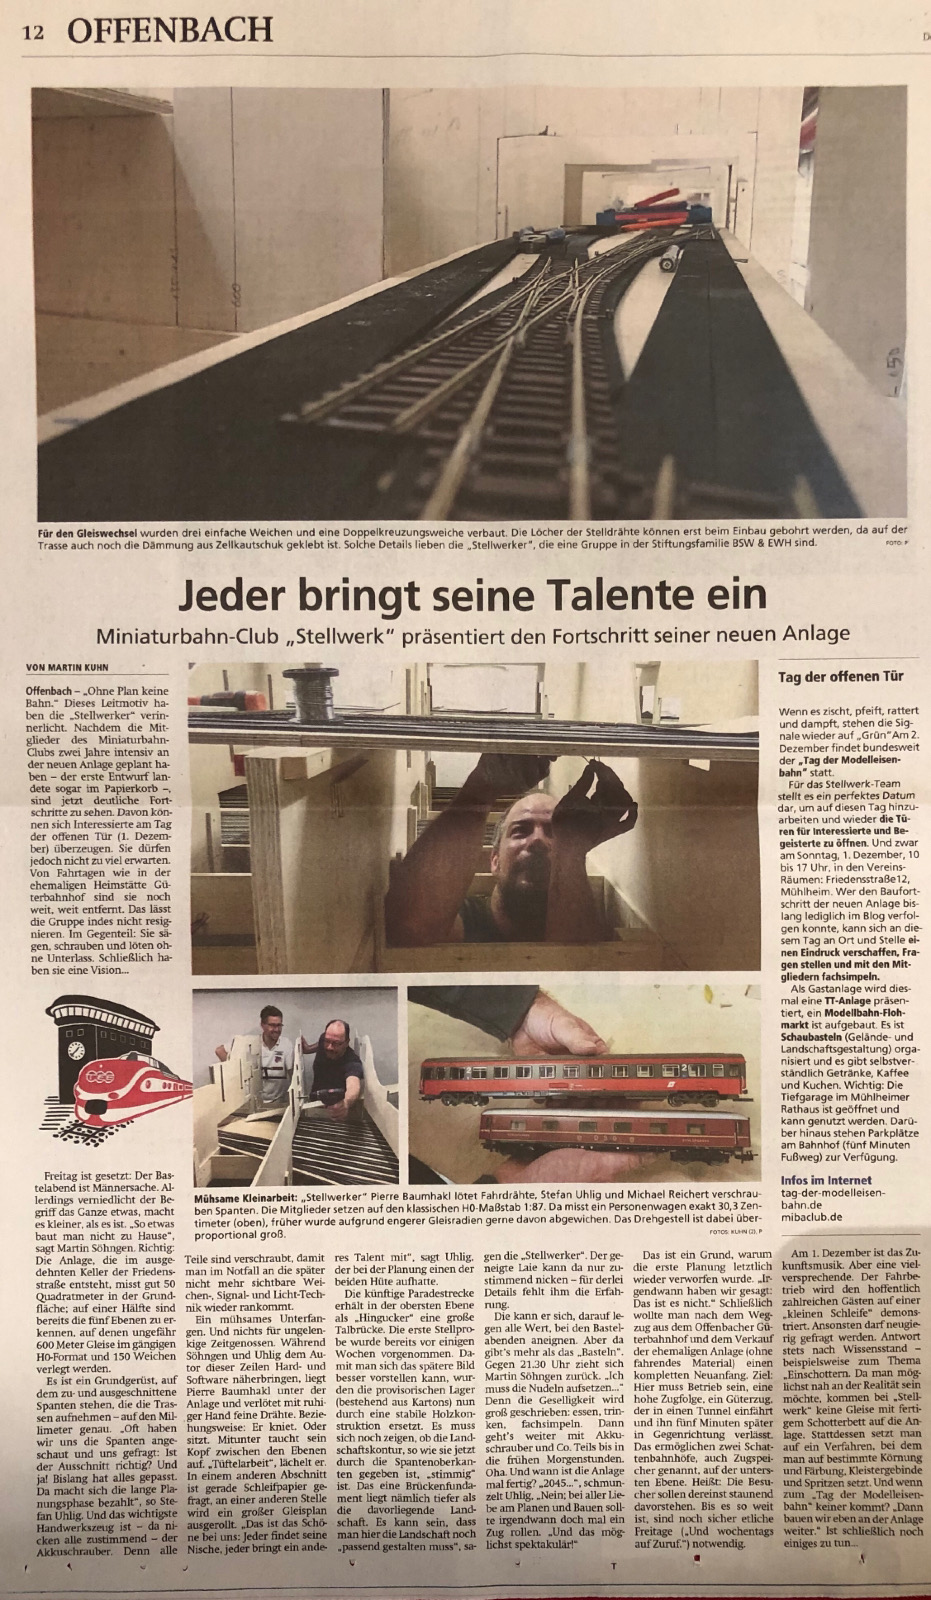 Offenbach Post; vom 28.11.2019; vom Martin Kuhn; Jeder bringt seine Telente ein